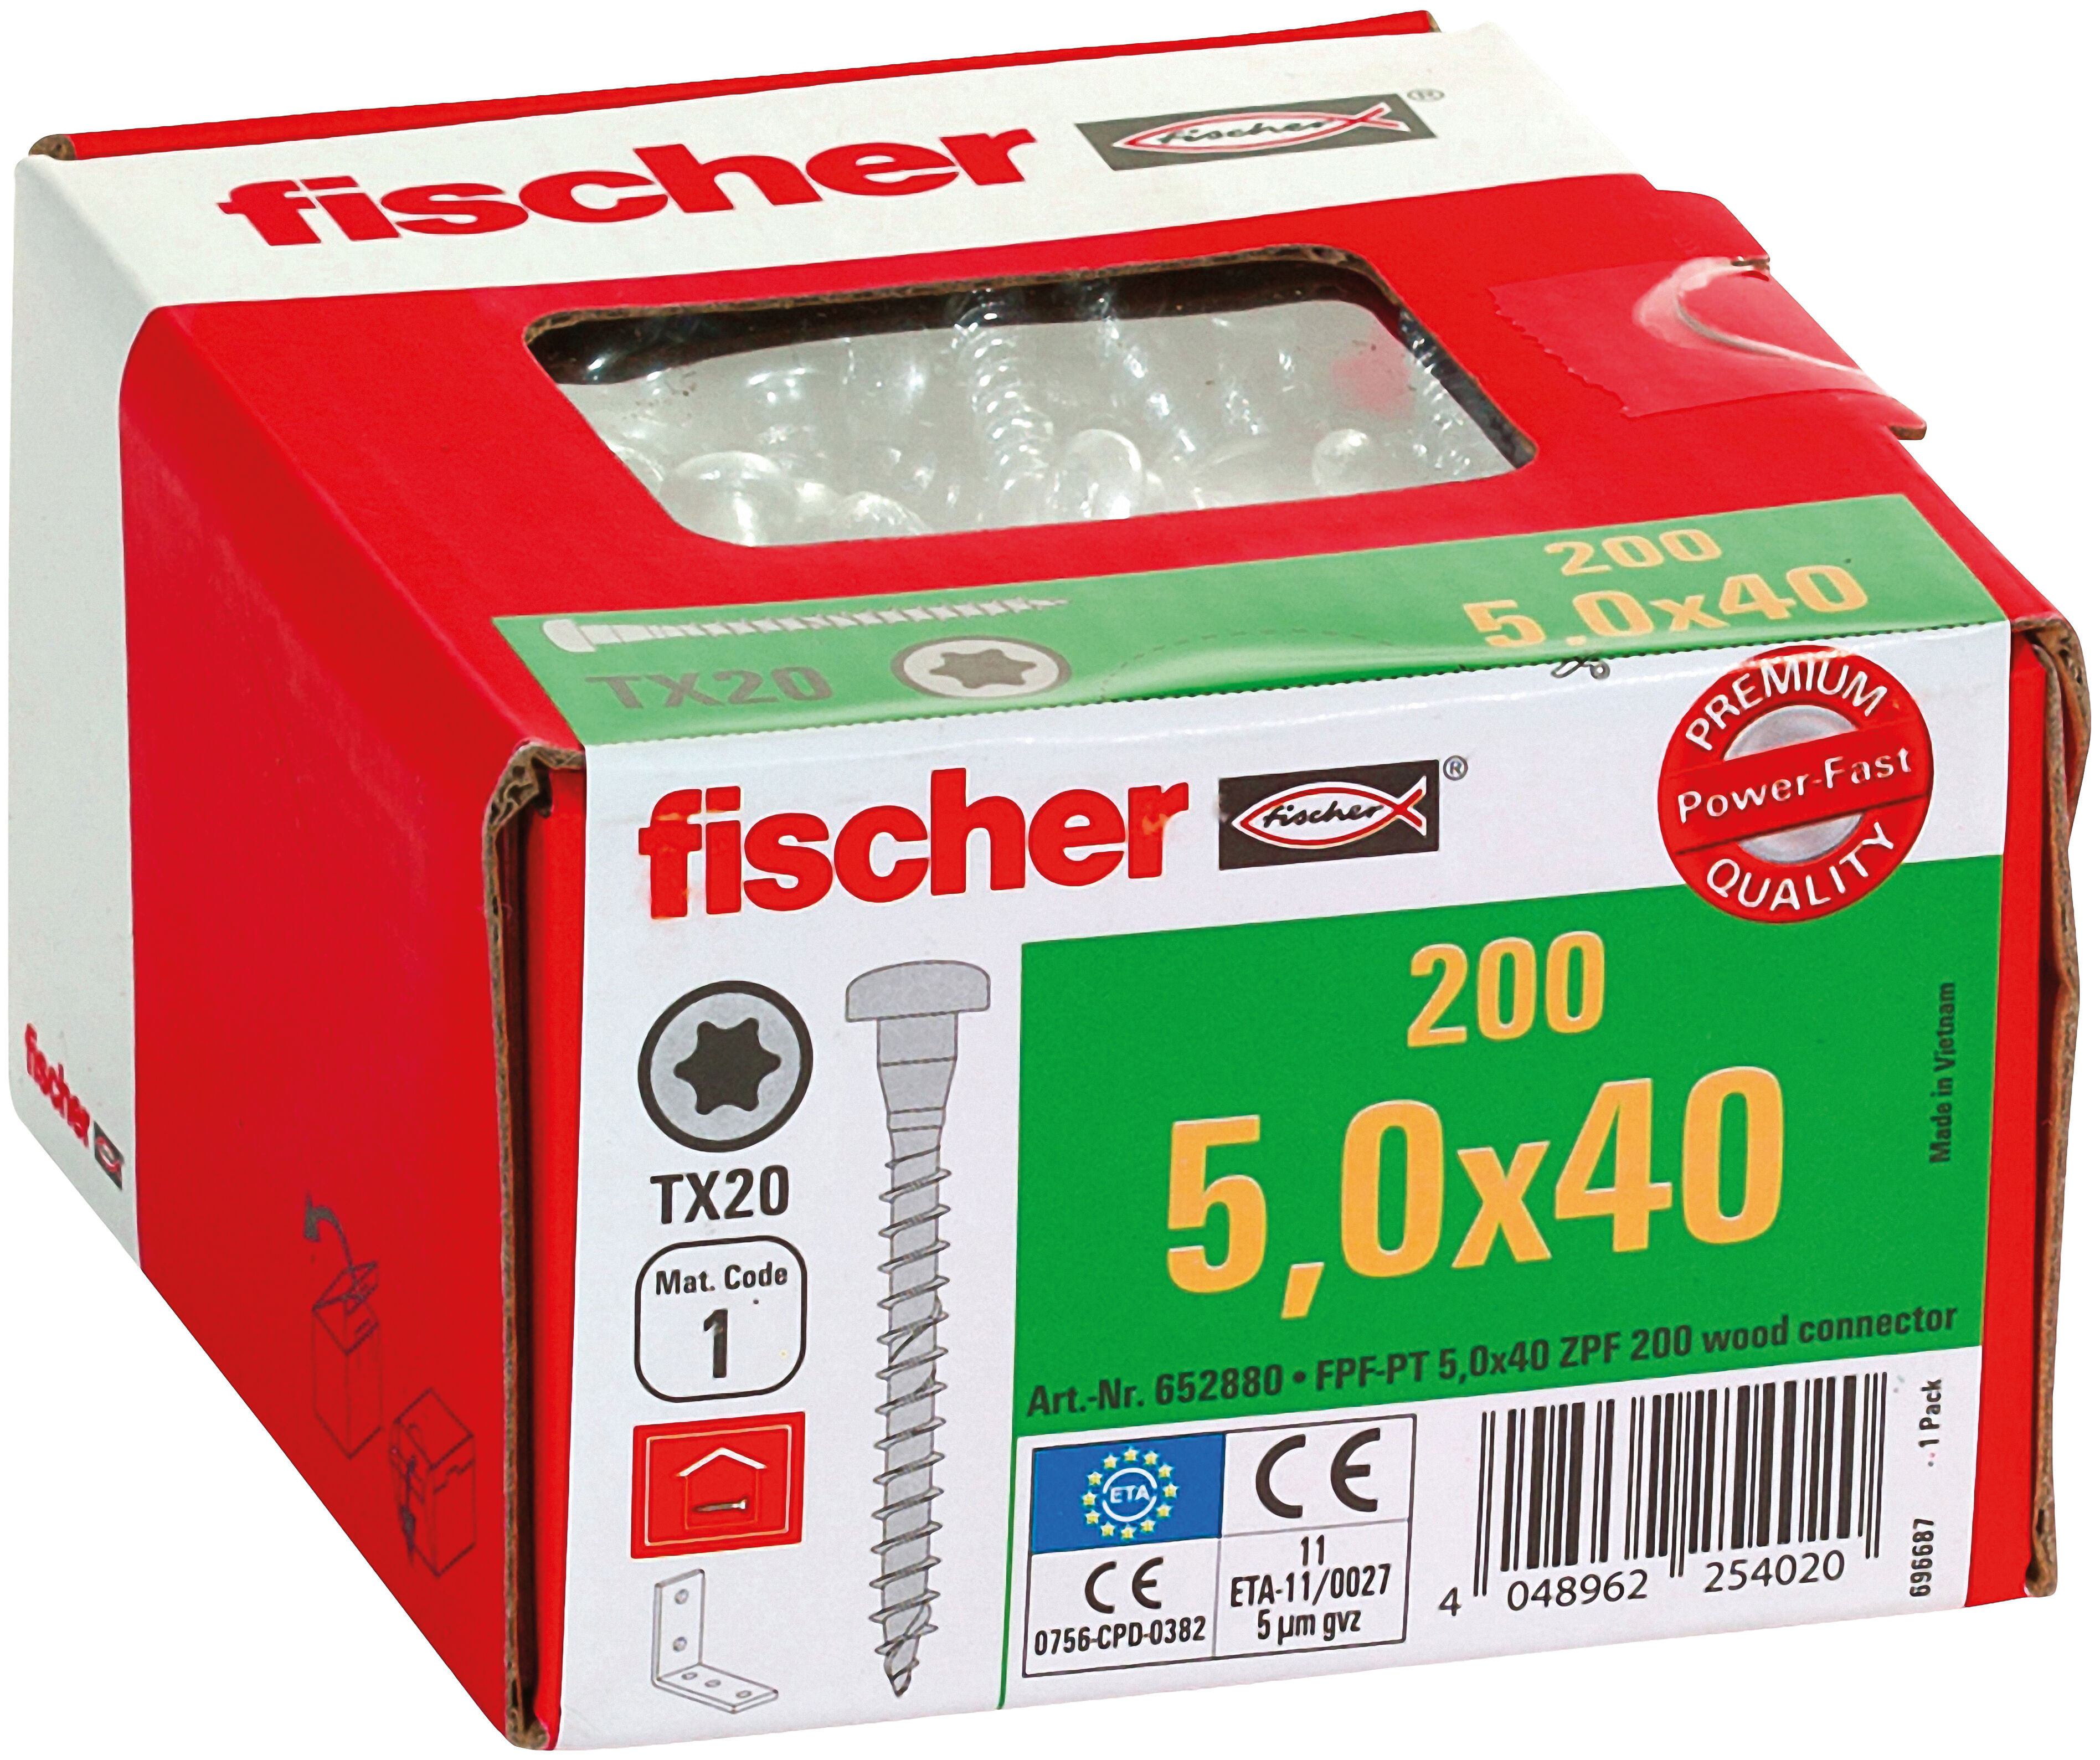 fischer PowerFast 5.0 x 40 blue zinc-plated full thread